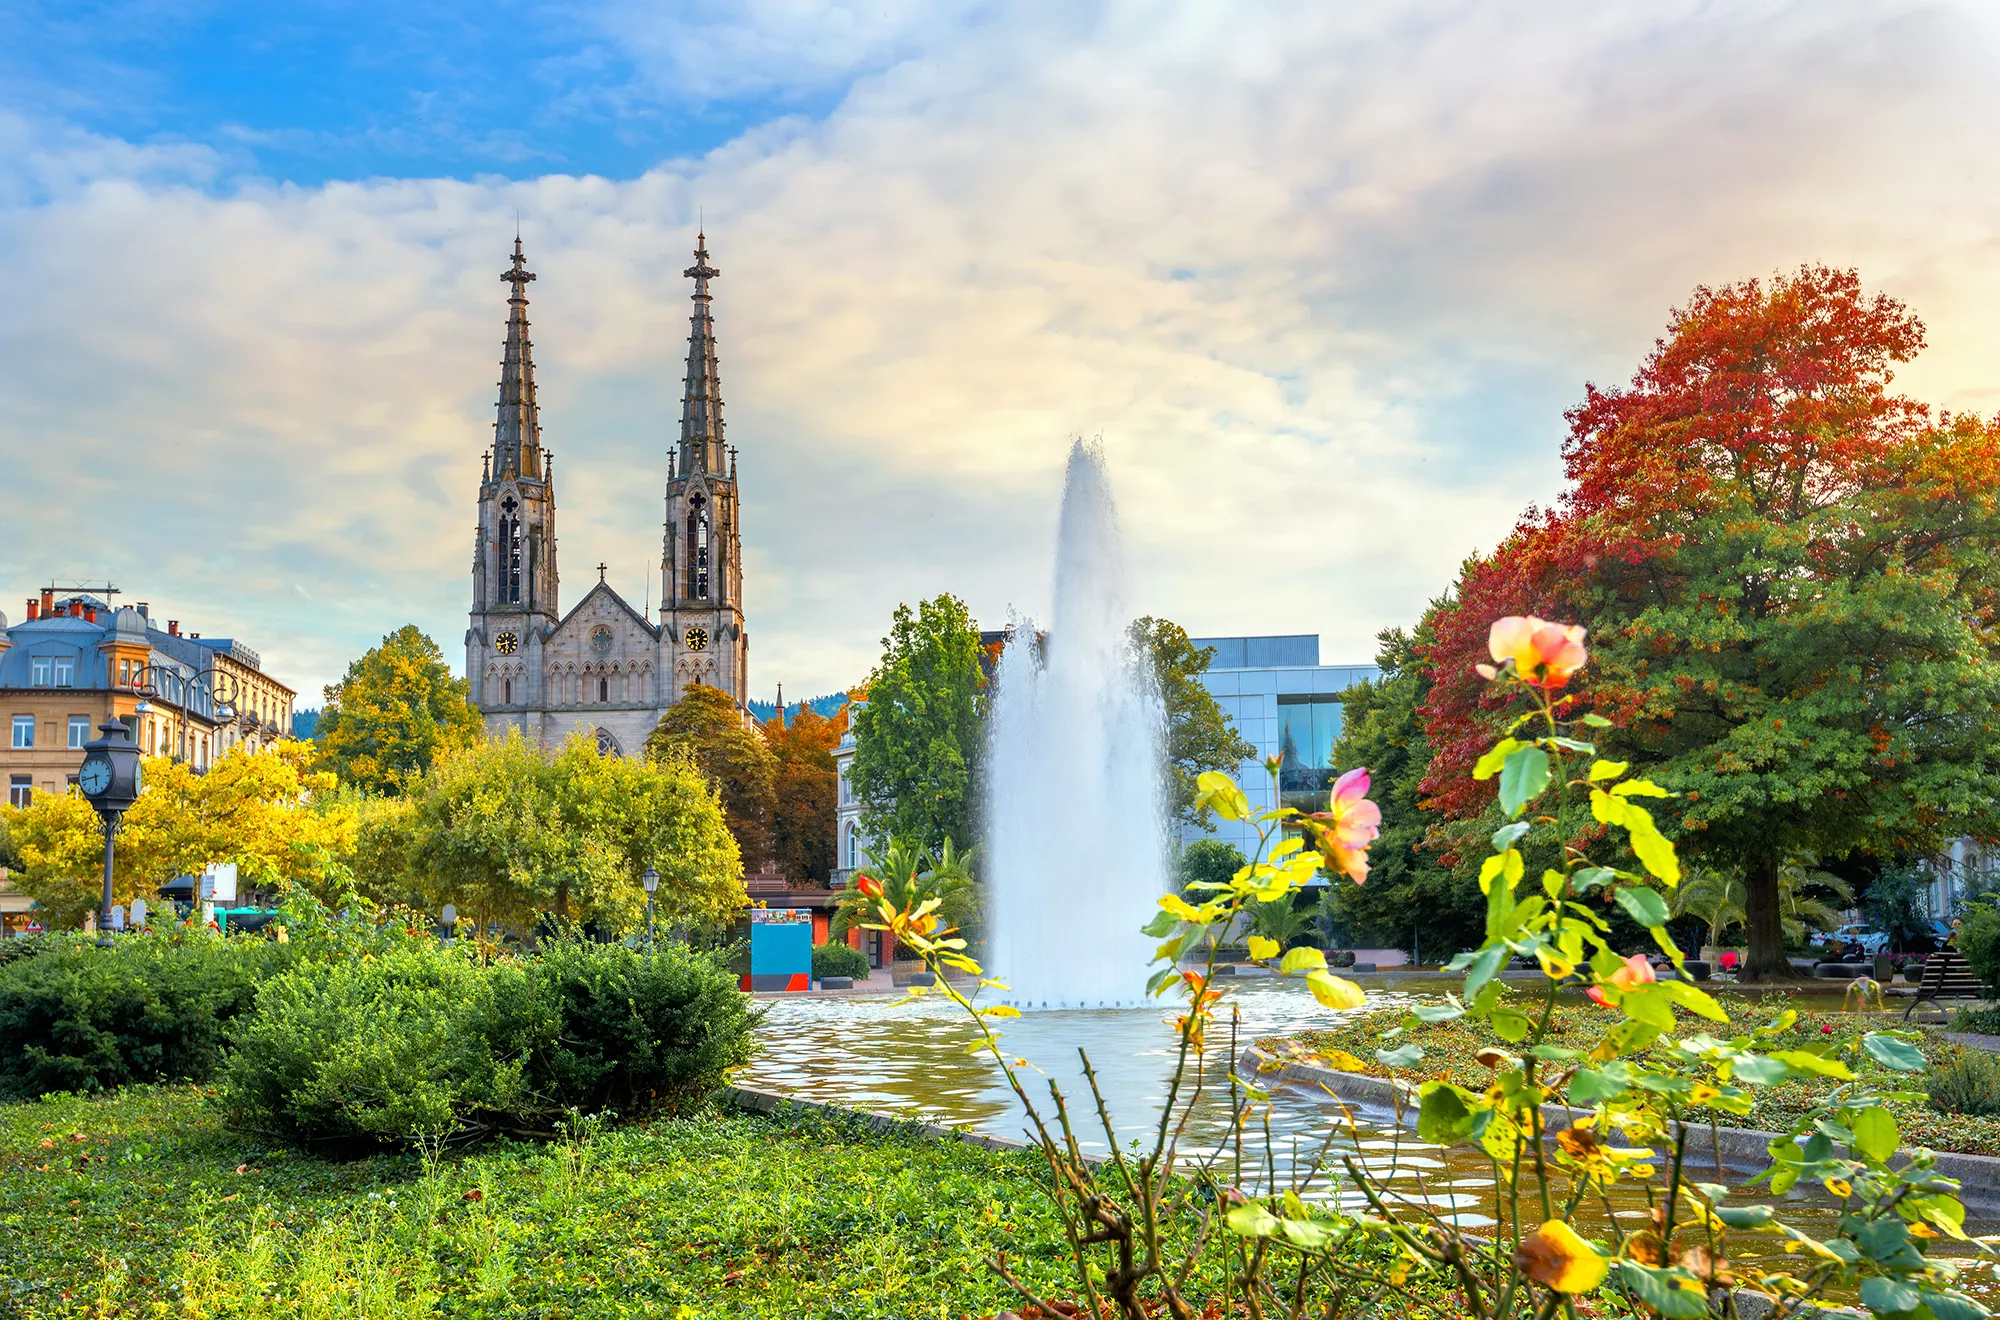 Evangelische Kirche in Baden-Baden hinter einem Springbrunnen mit Fontäne und herbstlichem Baum mit bunten Blättern